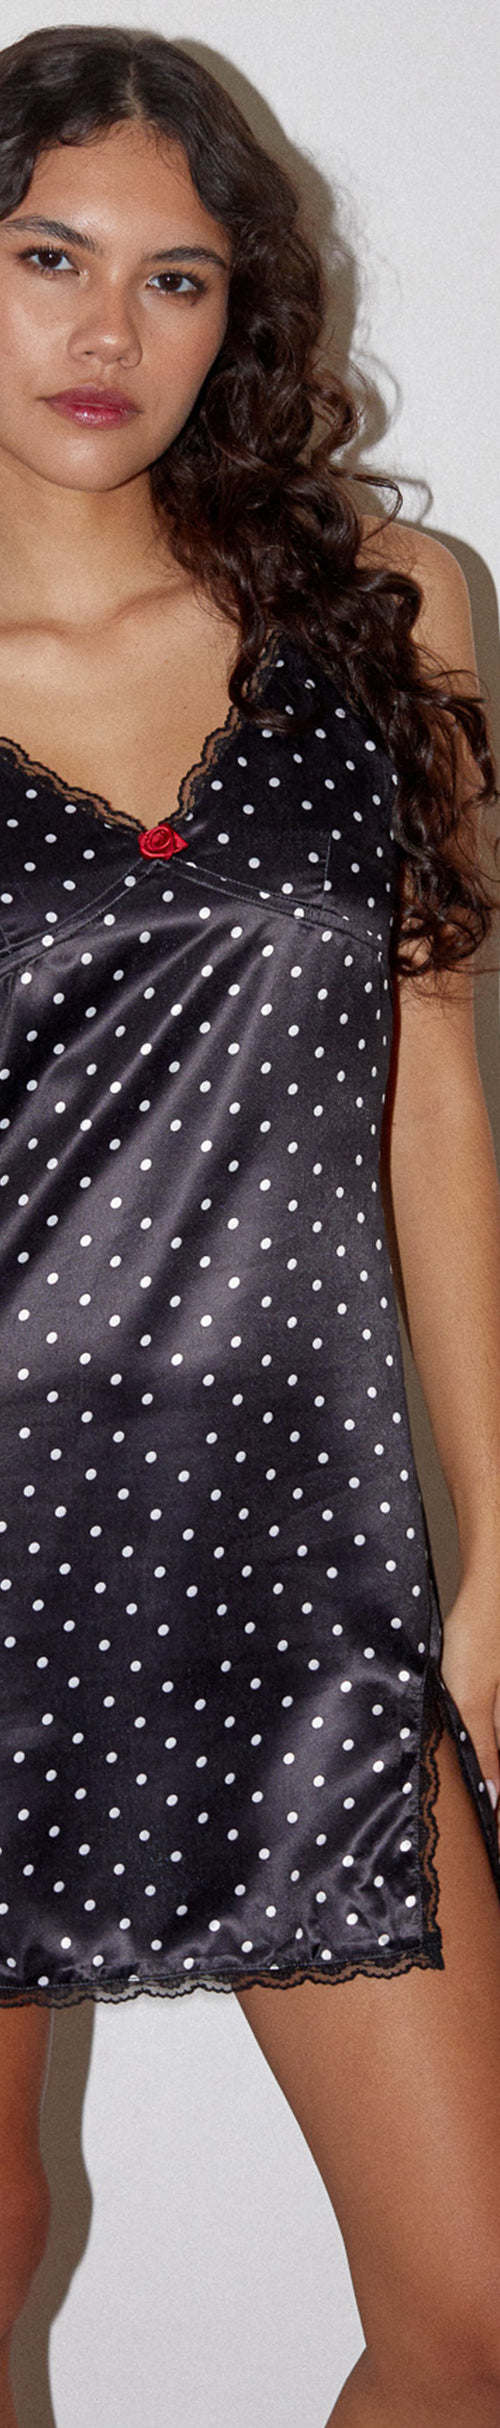 Image of Astrid Satin Mini Dress in Polka Dot Black